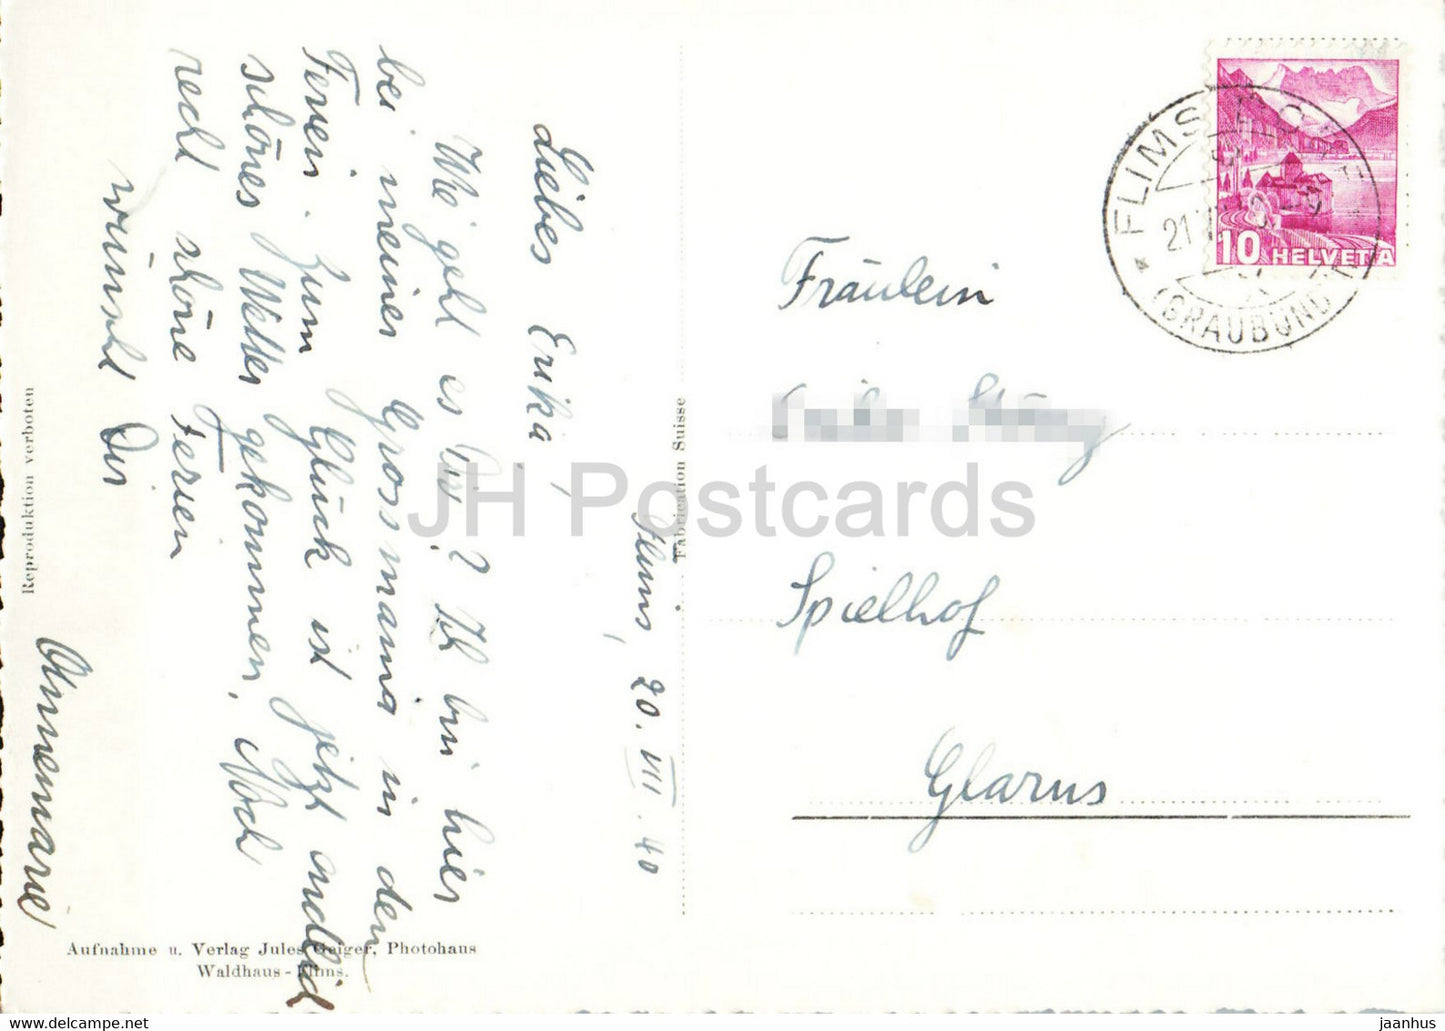 Flims mit Flimserstein - 1639 - alte Postkarte - 1940 - Schweiz - gebraucht